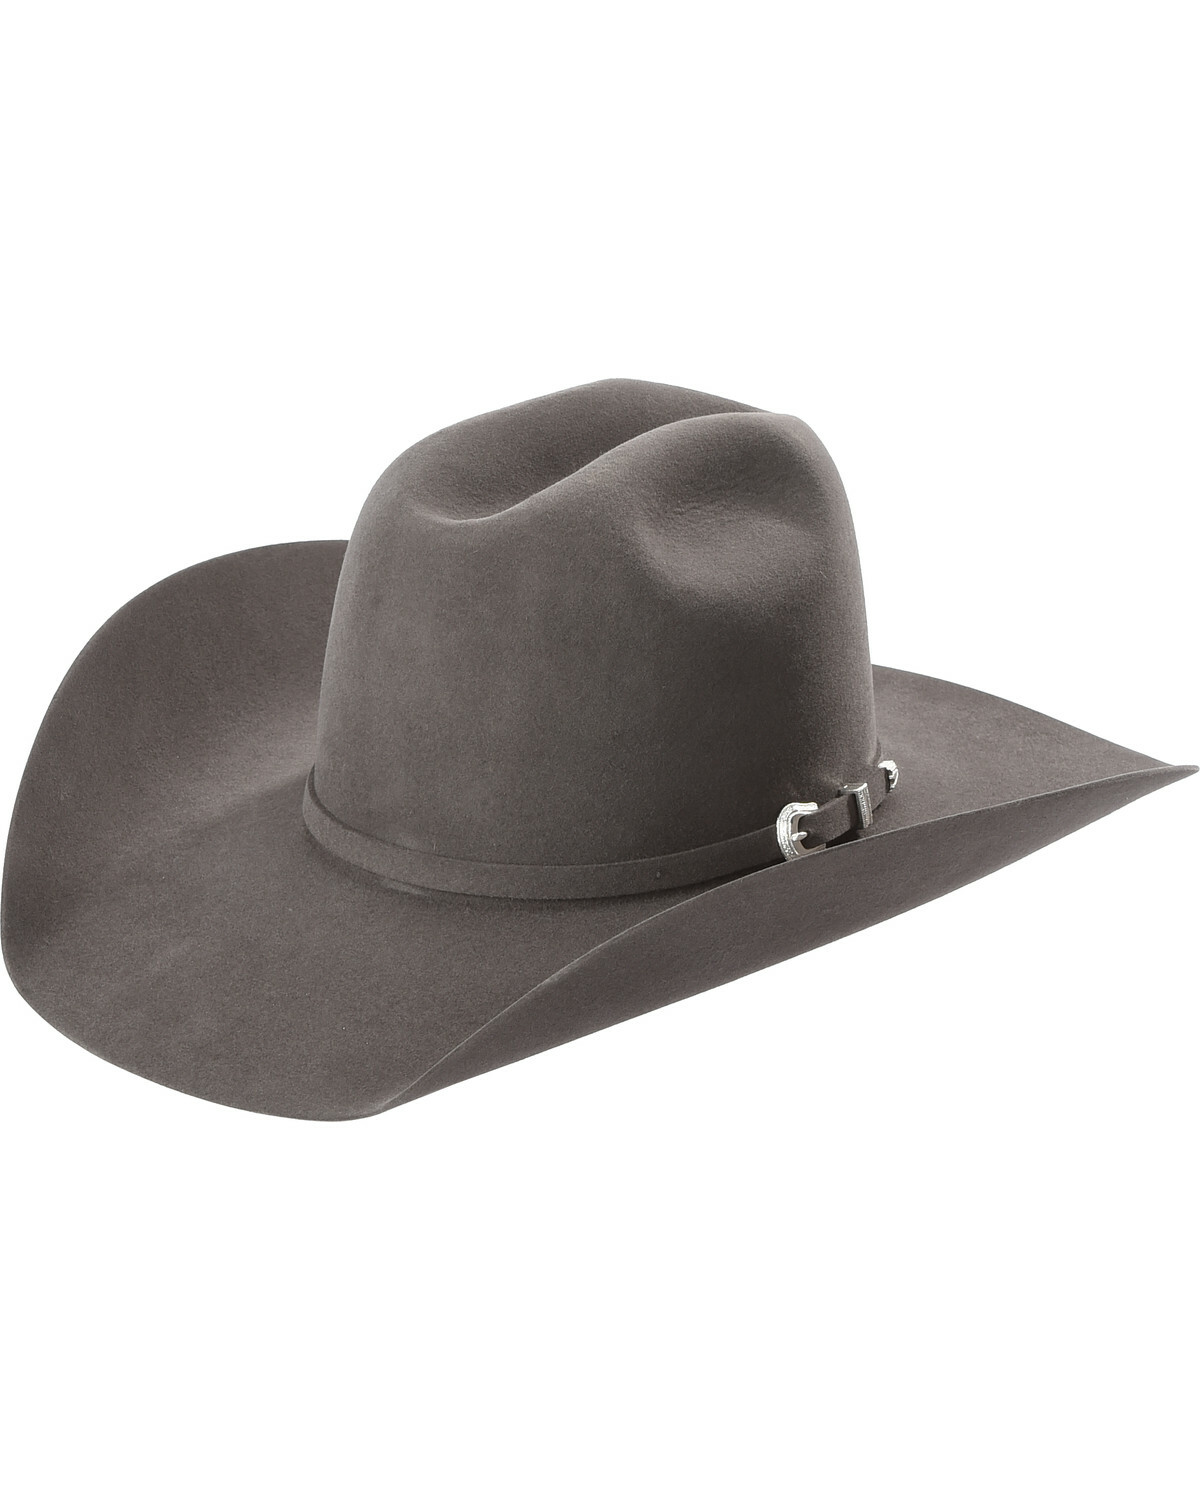 Aprenda a limpiar un sombrero e' guama – Ruta65